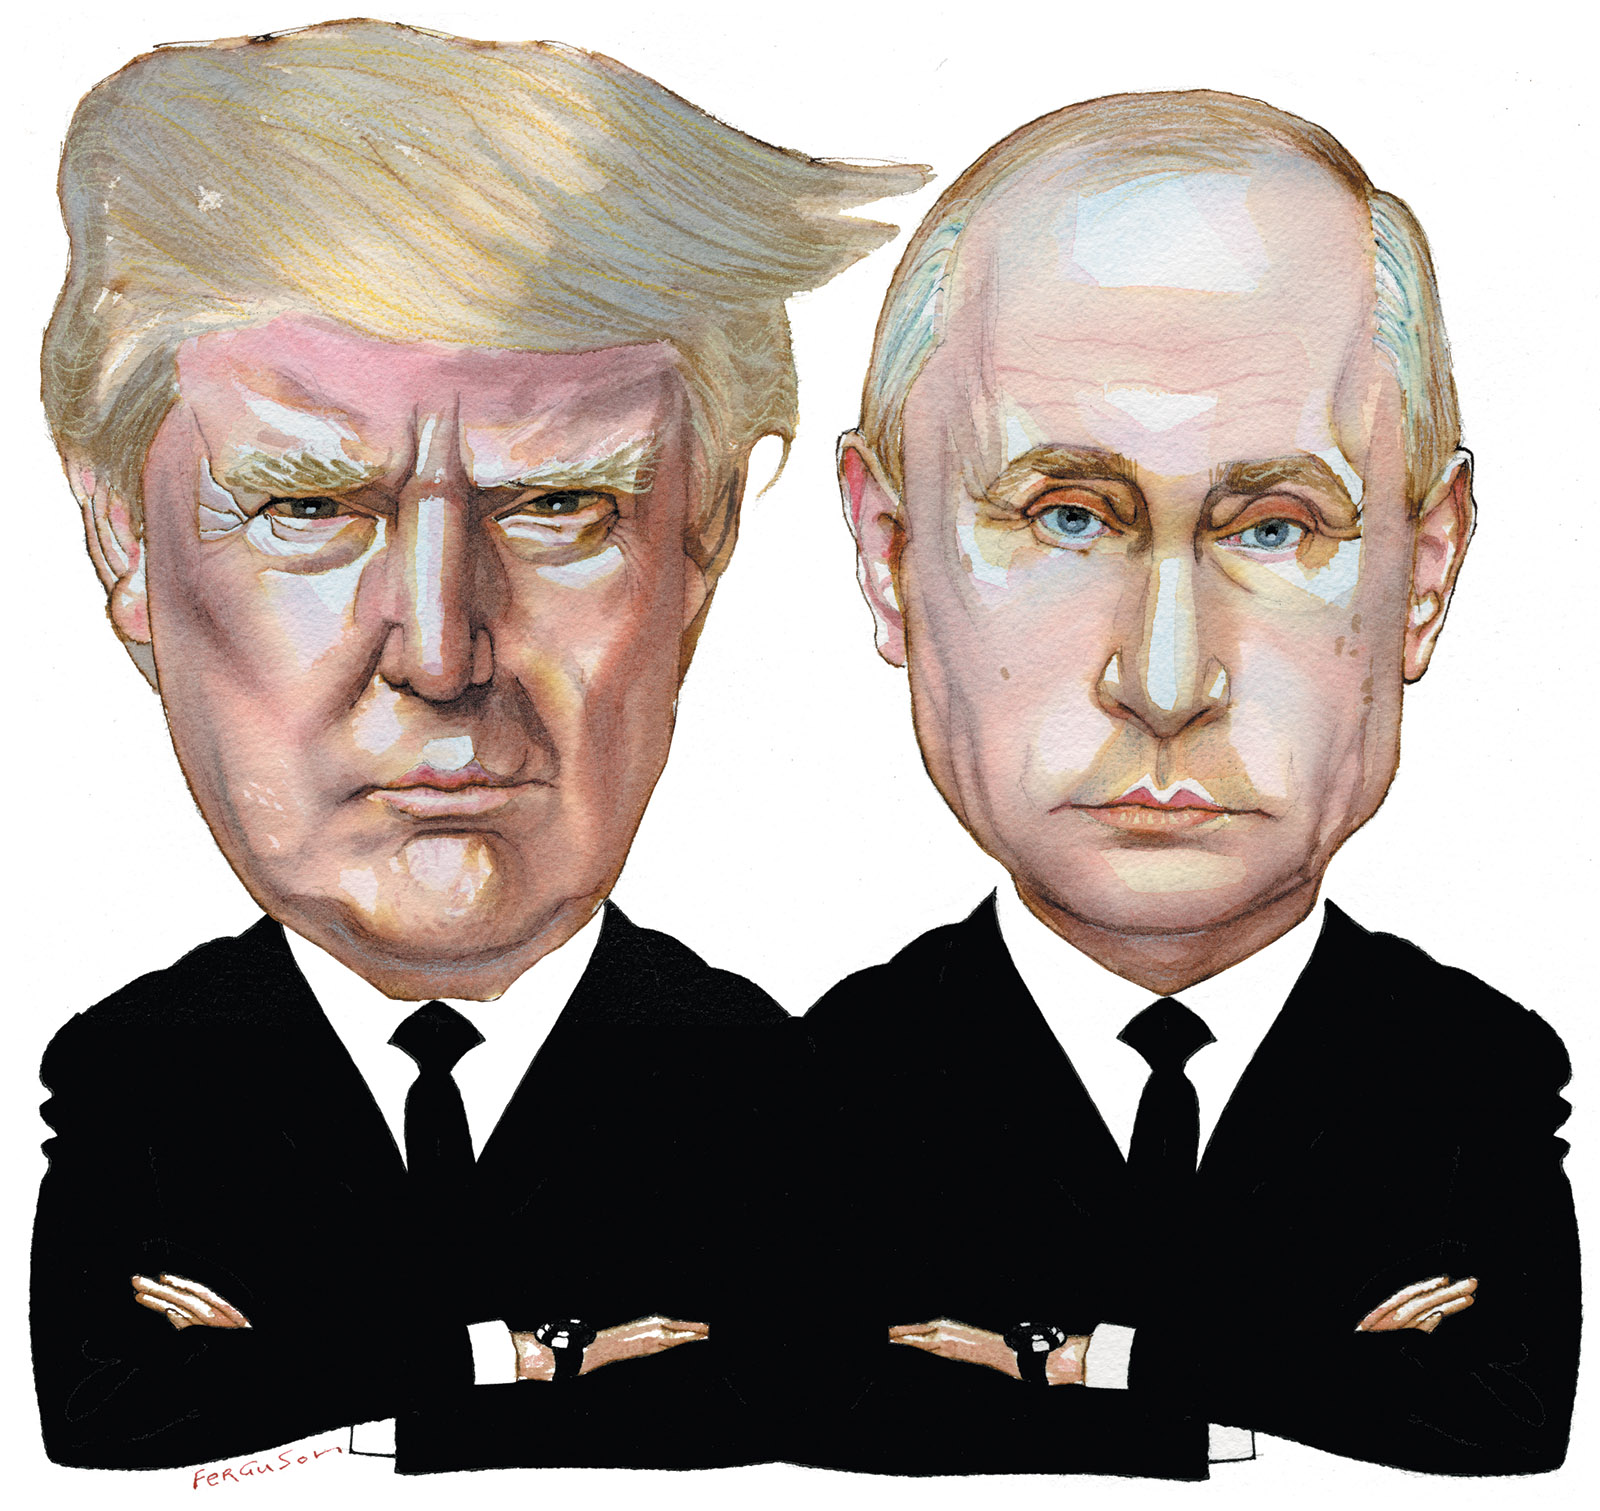 Russia, NATO, Trump: The Shadow World